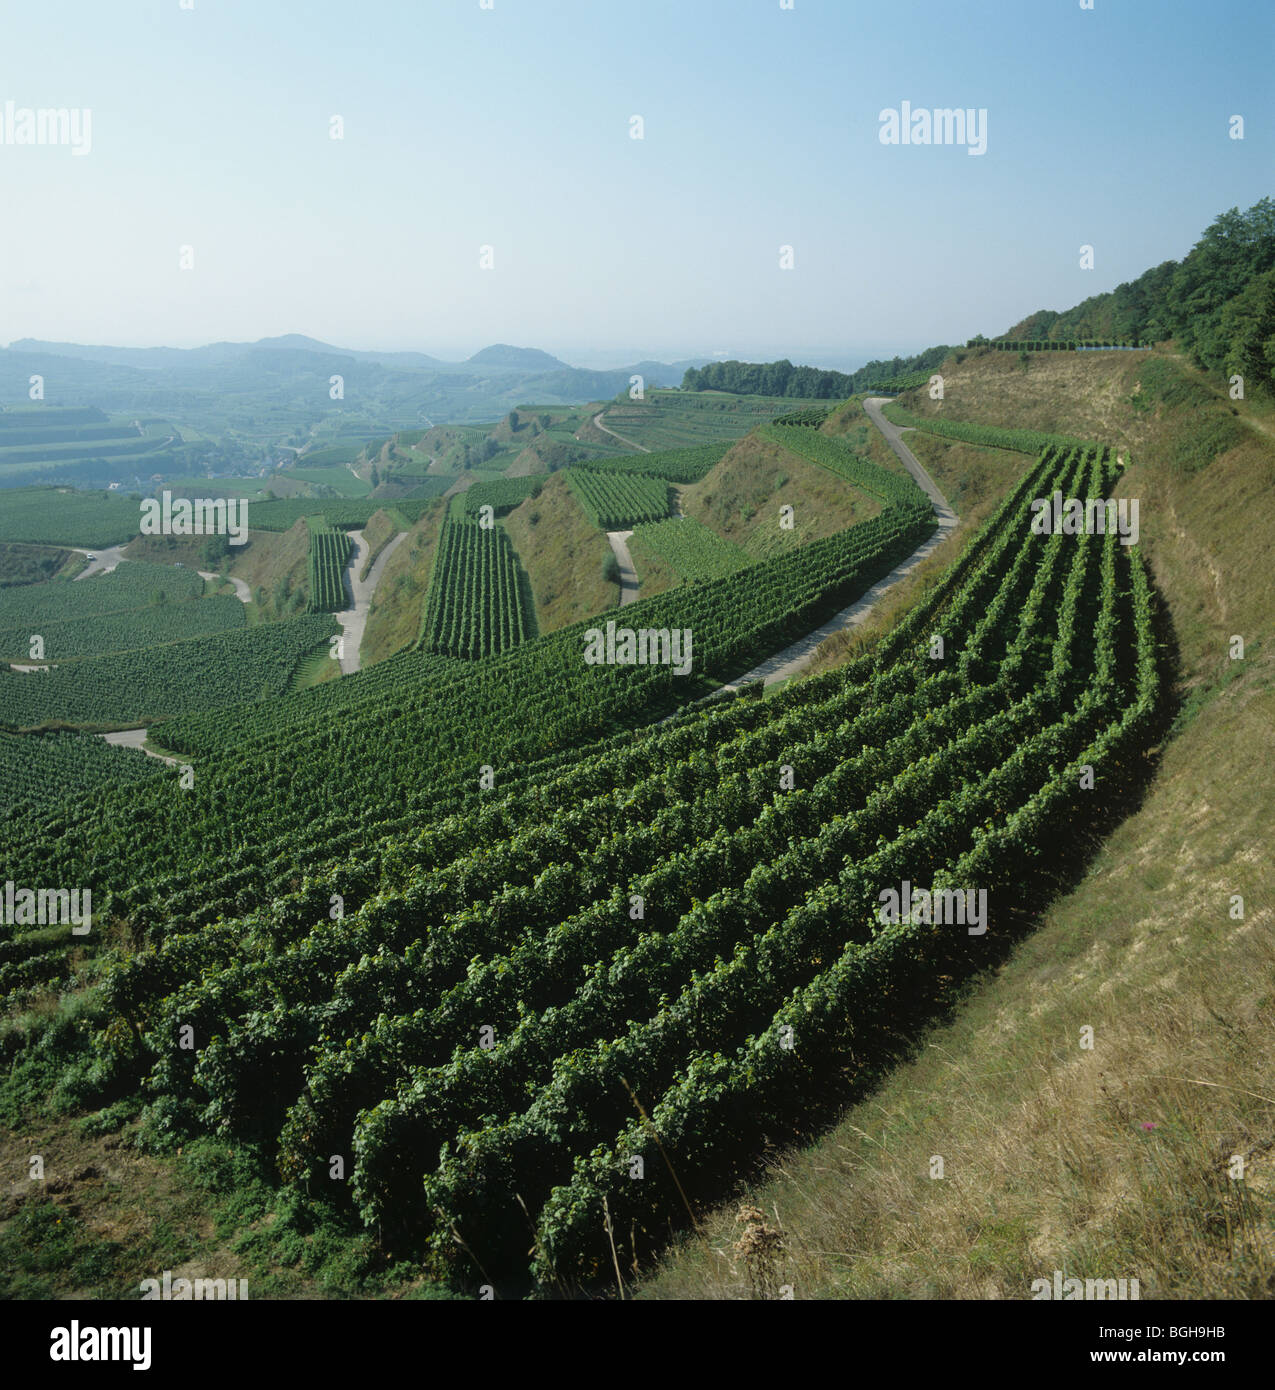 Avis de vignobles en terrasses dans la région de Kaiserstuhl, Allemagne Banque D'Images